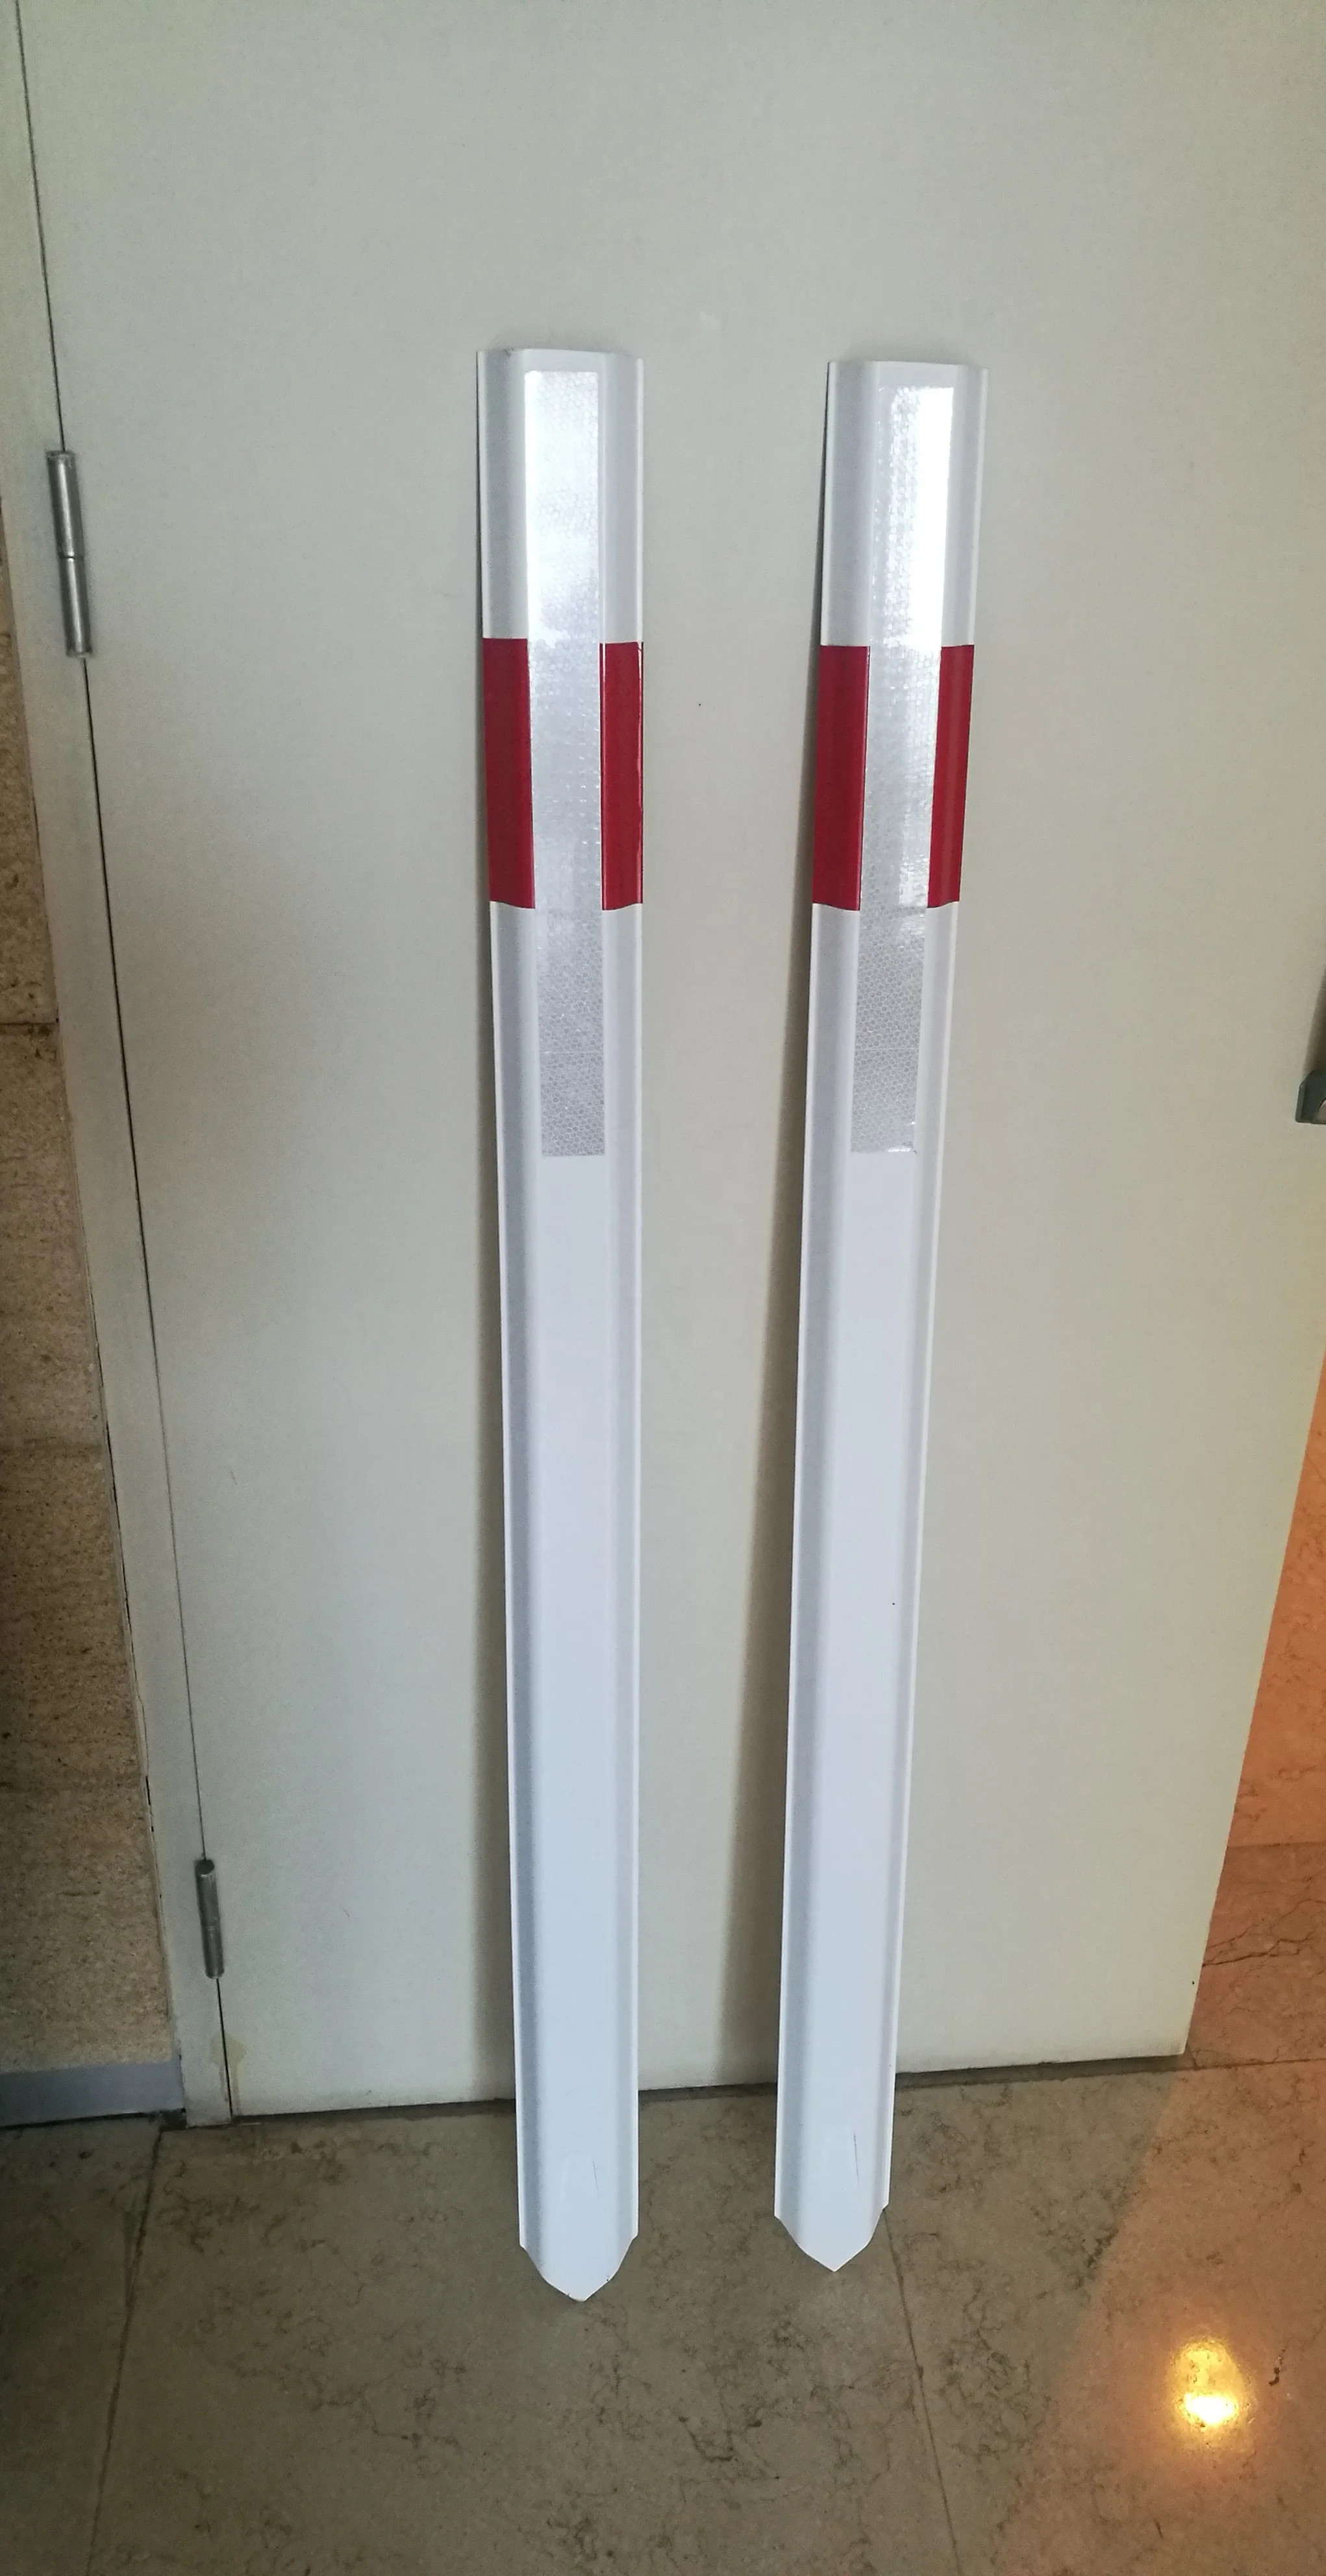 
Edge Marker Post Angular White PVC traffic flexible mark delineator post 